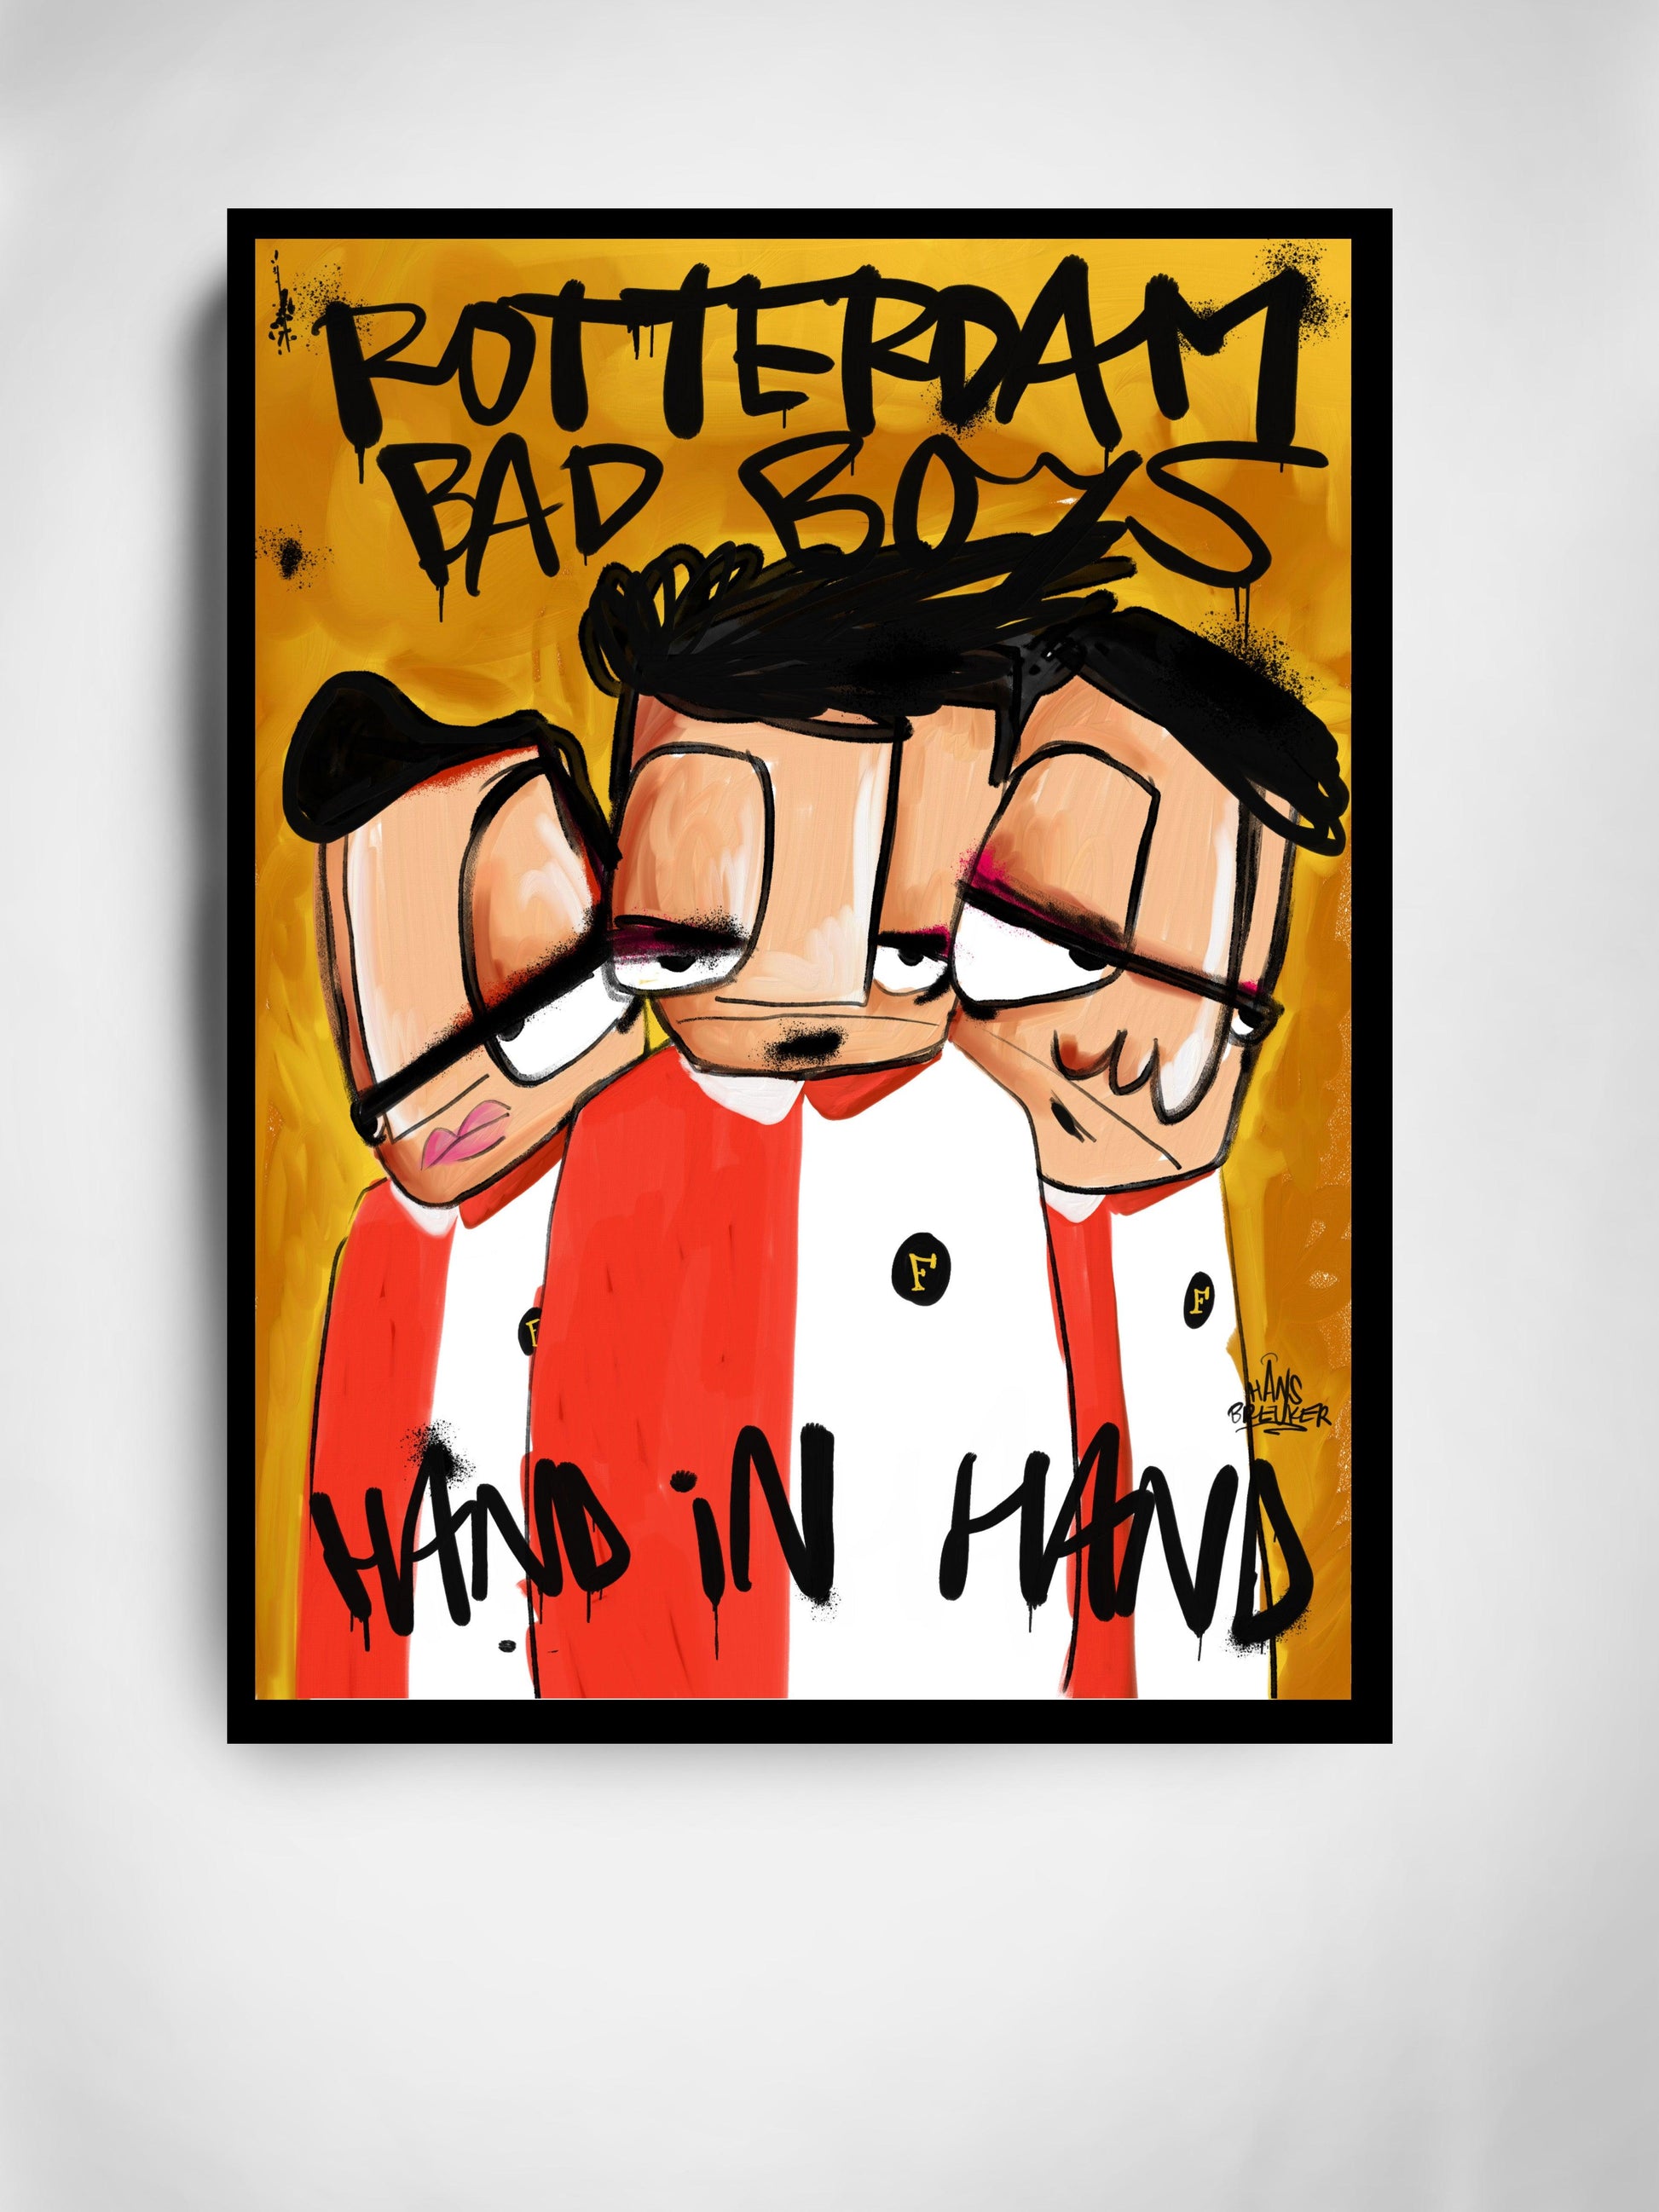 Rotterdam Bad Boys hand in hand - Hans Breuker